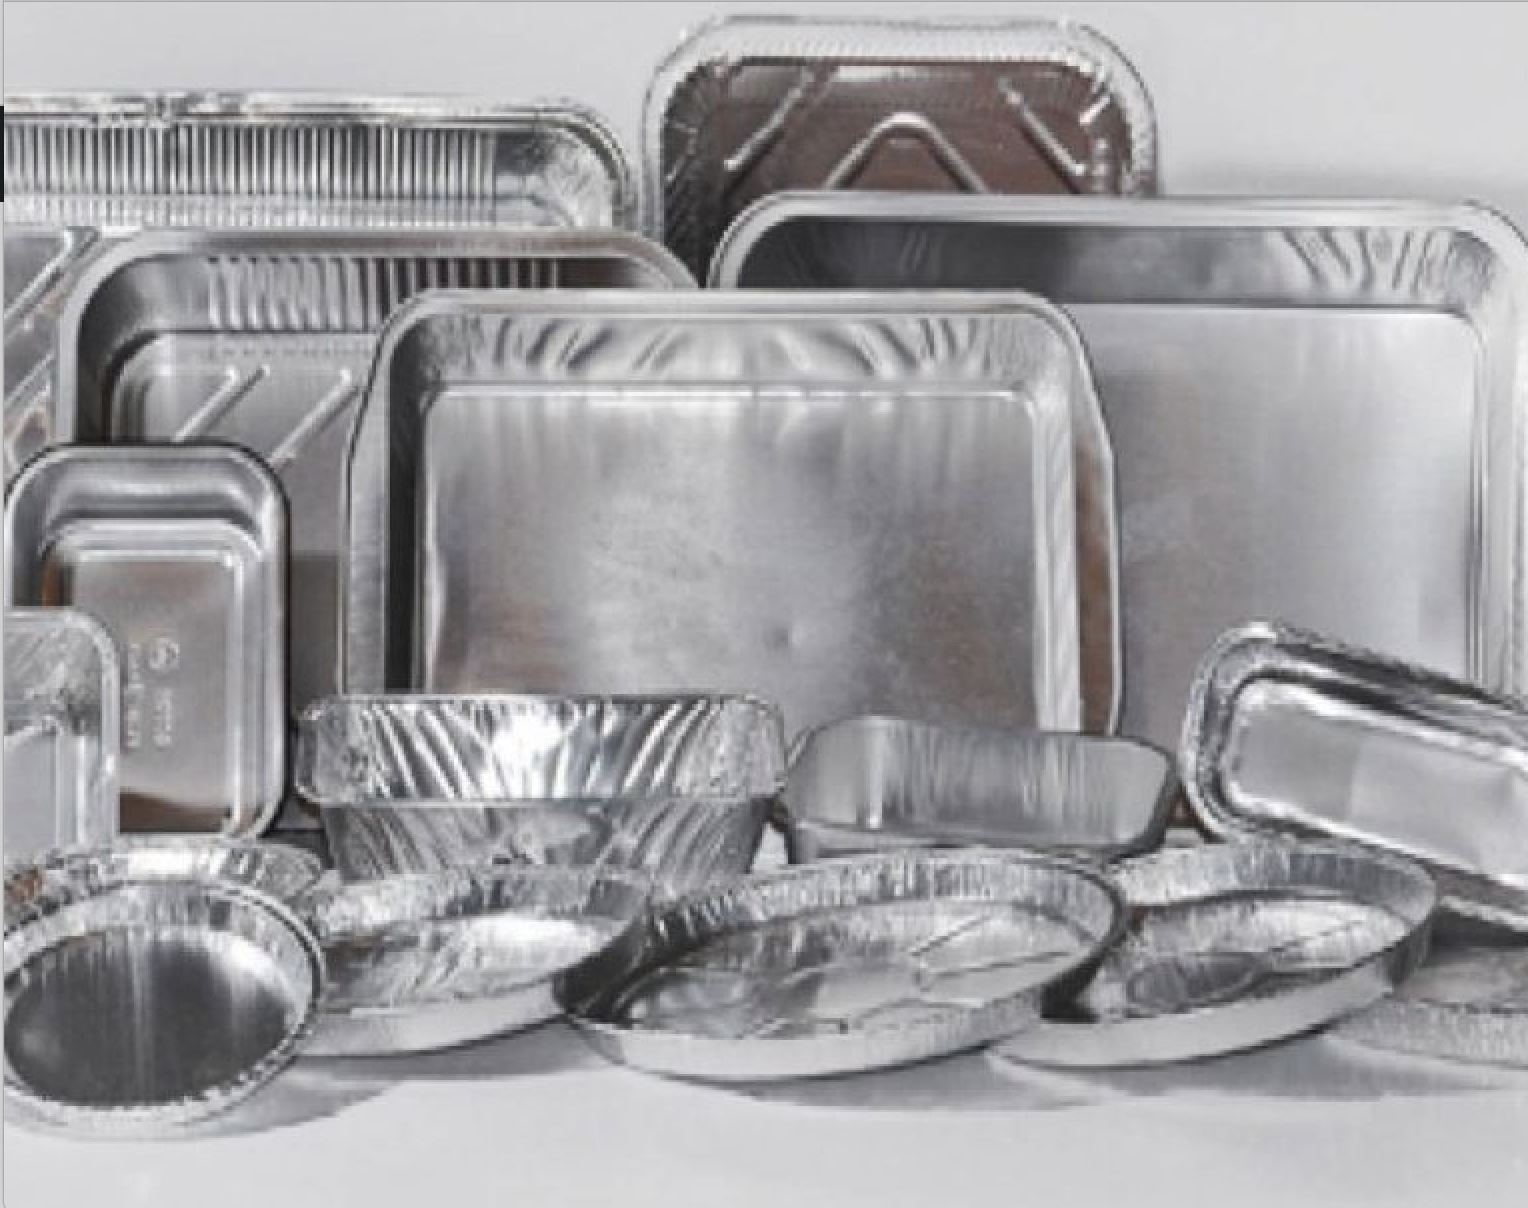 come-utilizzare-correttamente-l’alluminio-in-cucina-senza-rischi:-mai-con-questi-alimenti.-diventano-cancerogeni